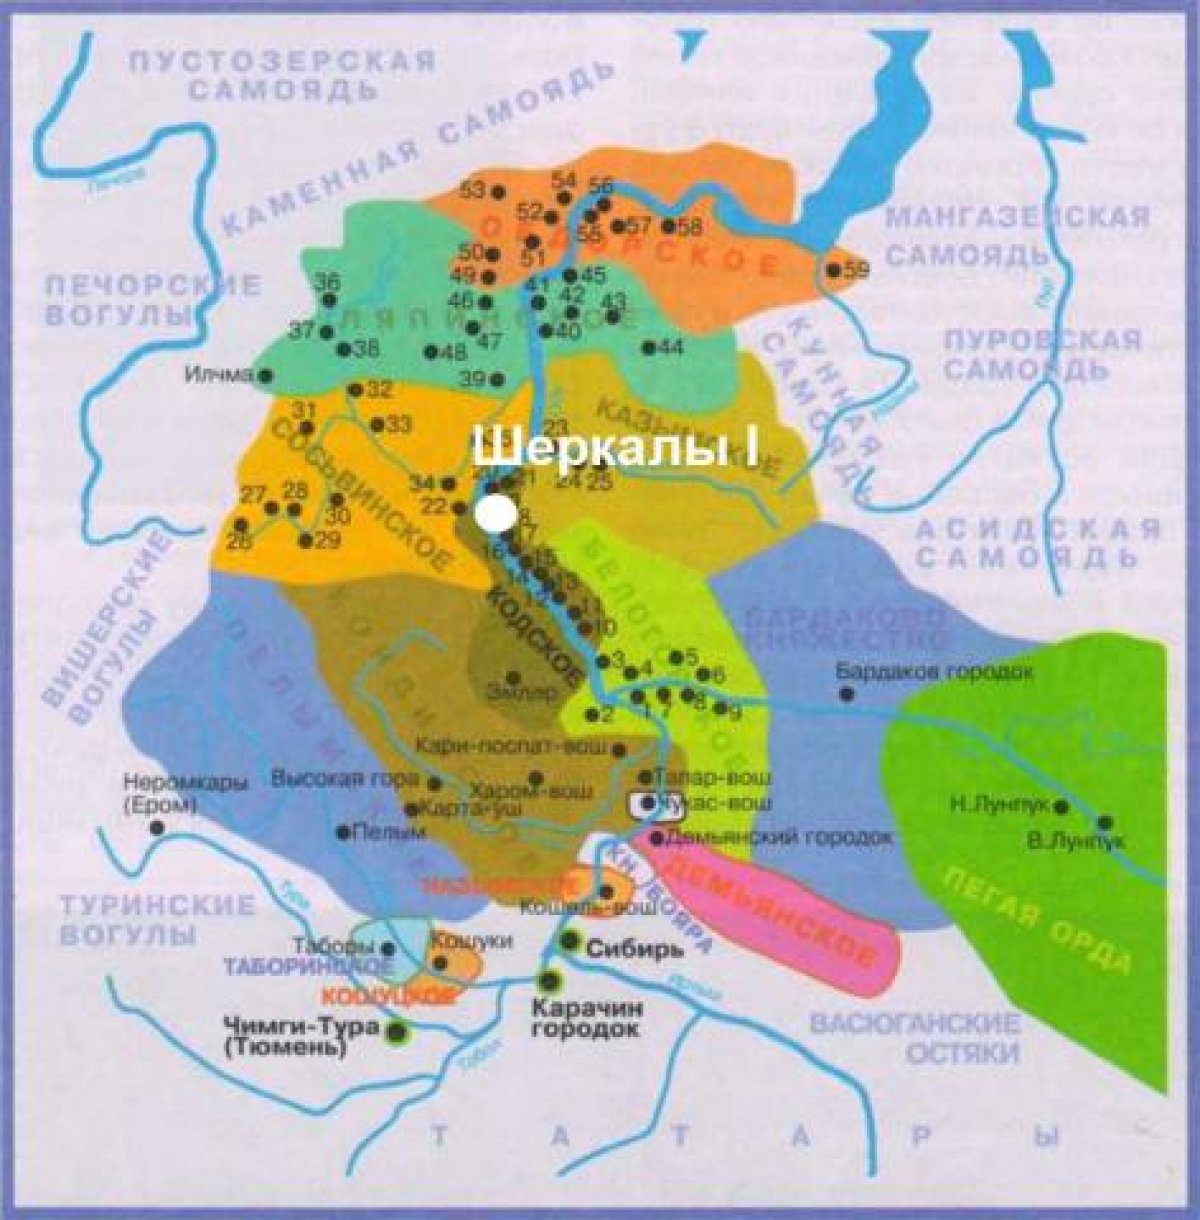 Показать сибирское ханство на карте. Сибирское ханство 16 века. Столица Сибирского ханства в 16 веке на карте. Сибирское ханство карта 15 век. Территория Сибирского ханства в 16 веке карта.